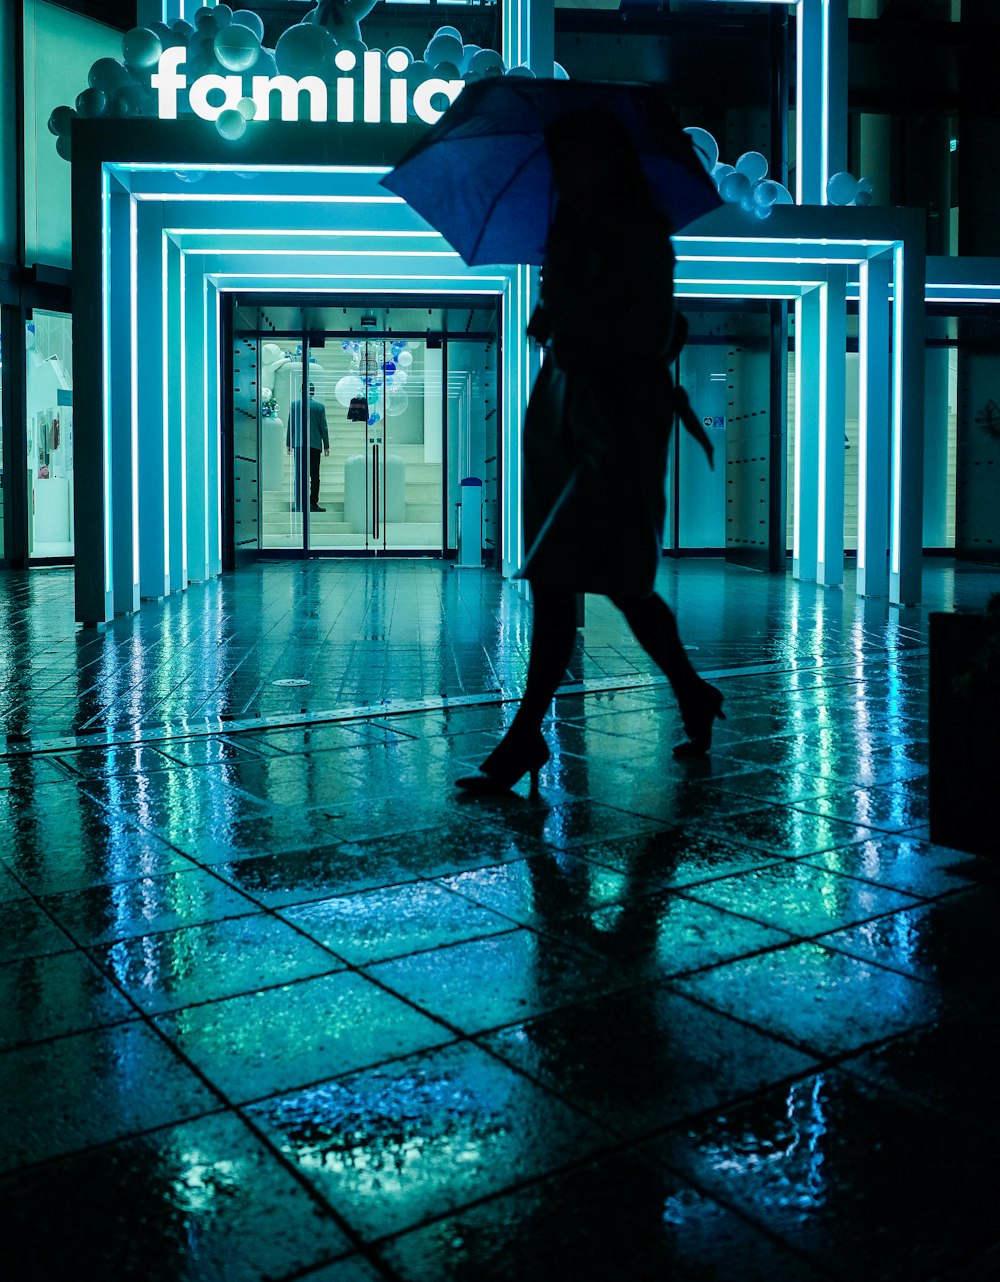 woman in black jacket and pants walking on blue floor tiles